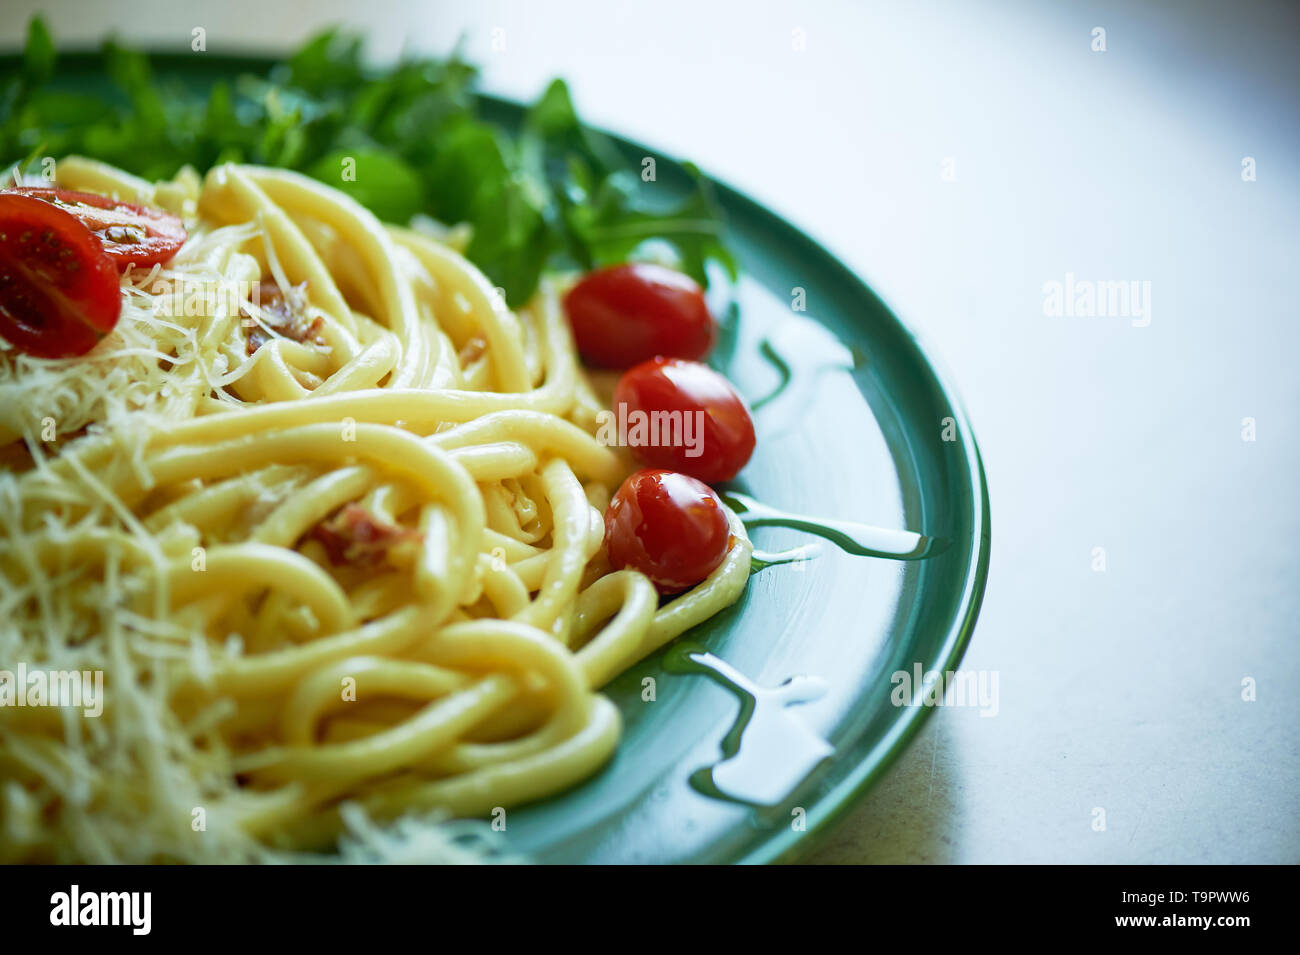 La pasta alla carbonara con parmigiano grattugiato e pomodorini, decorato con foglie di rucola.Italiano per pranzo. Foto Stock